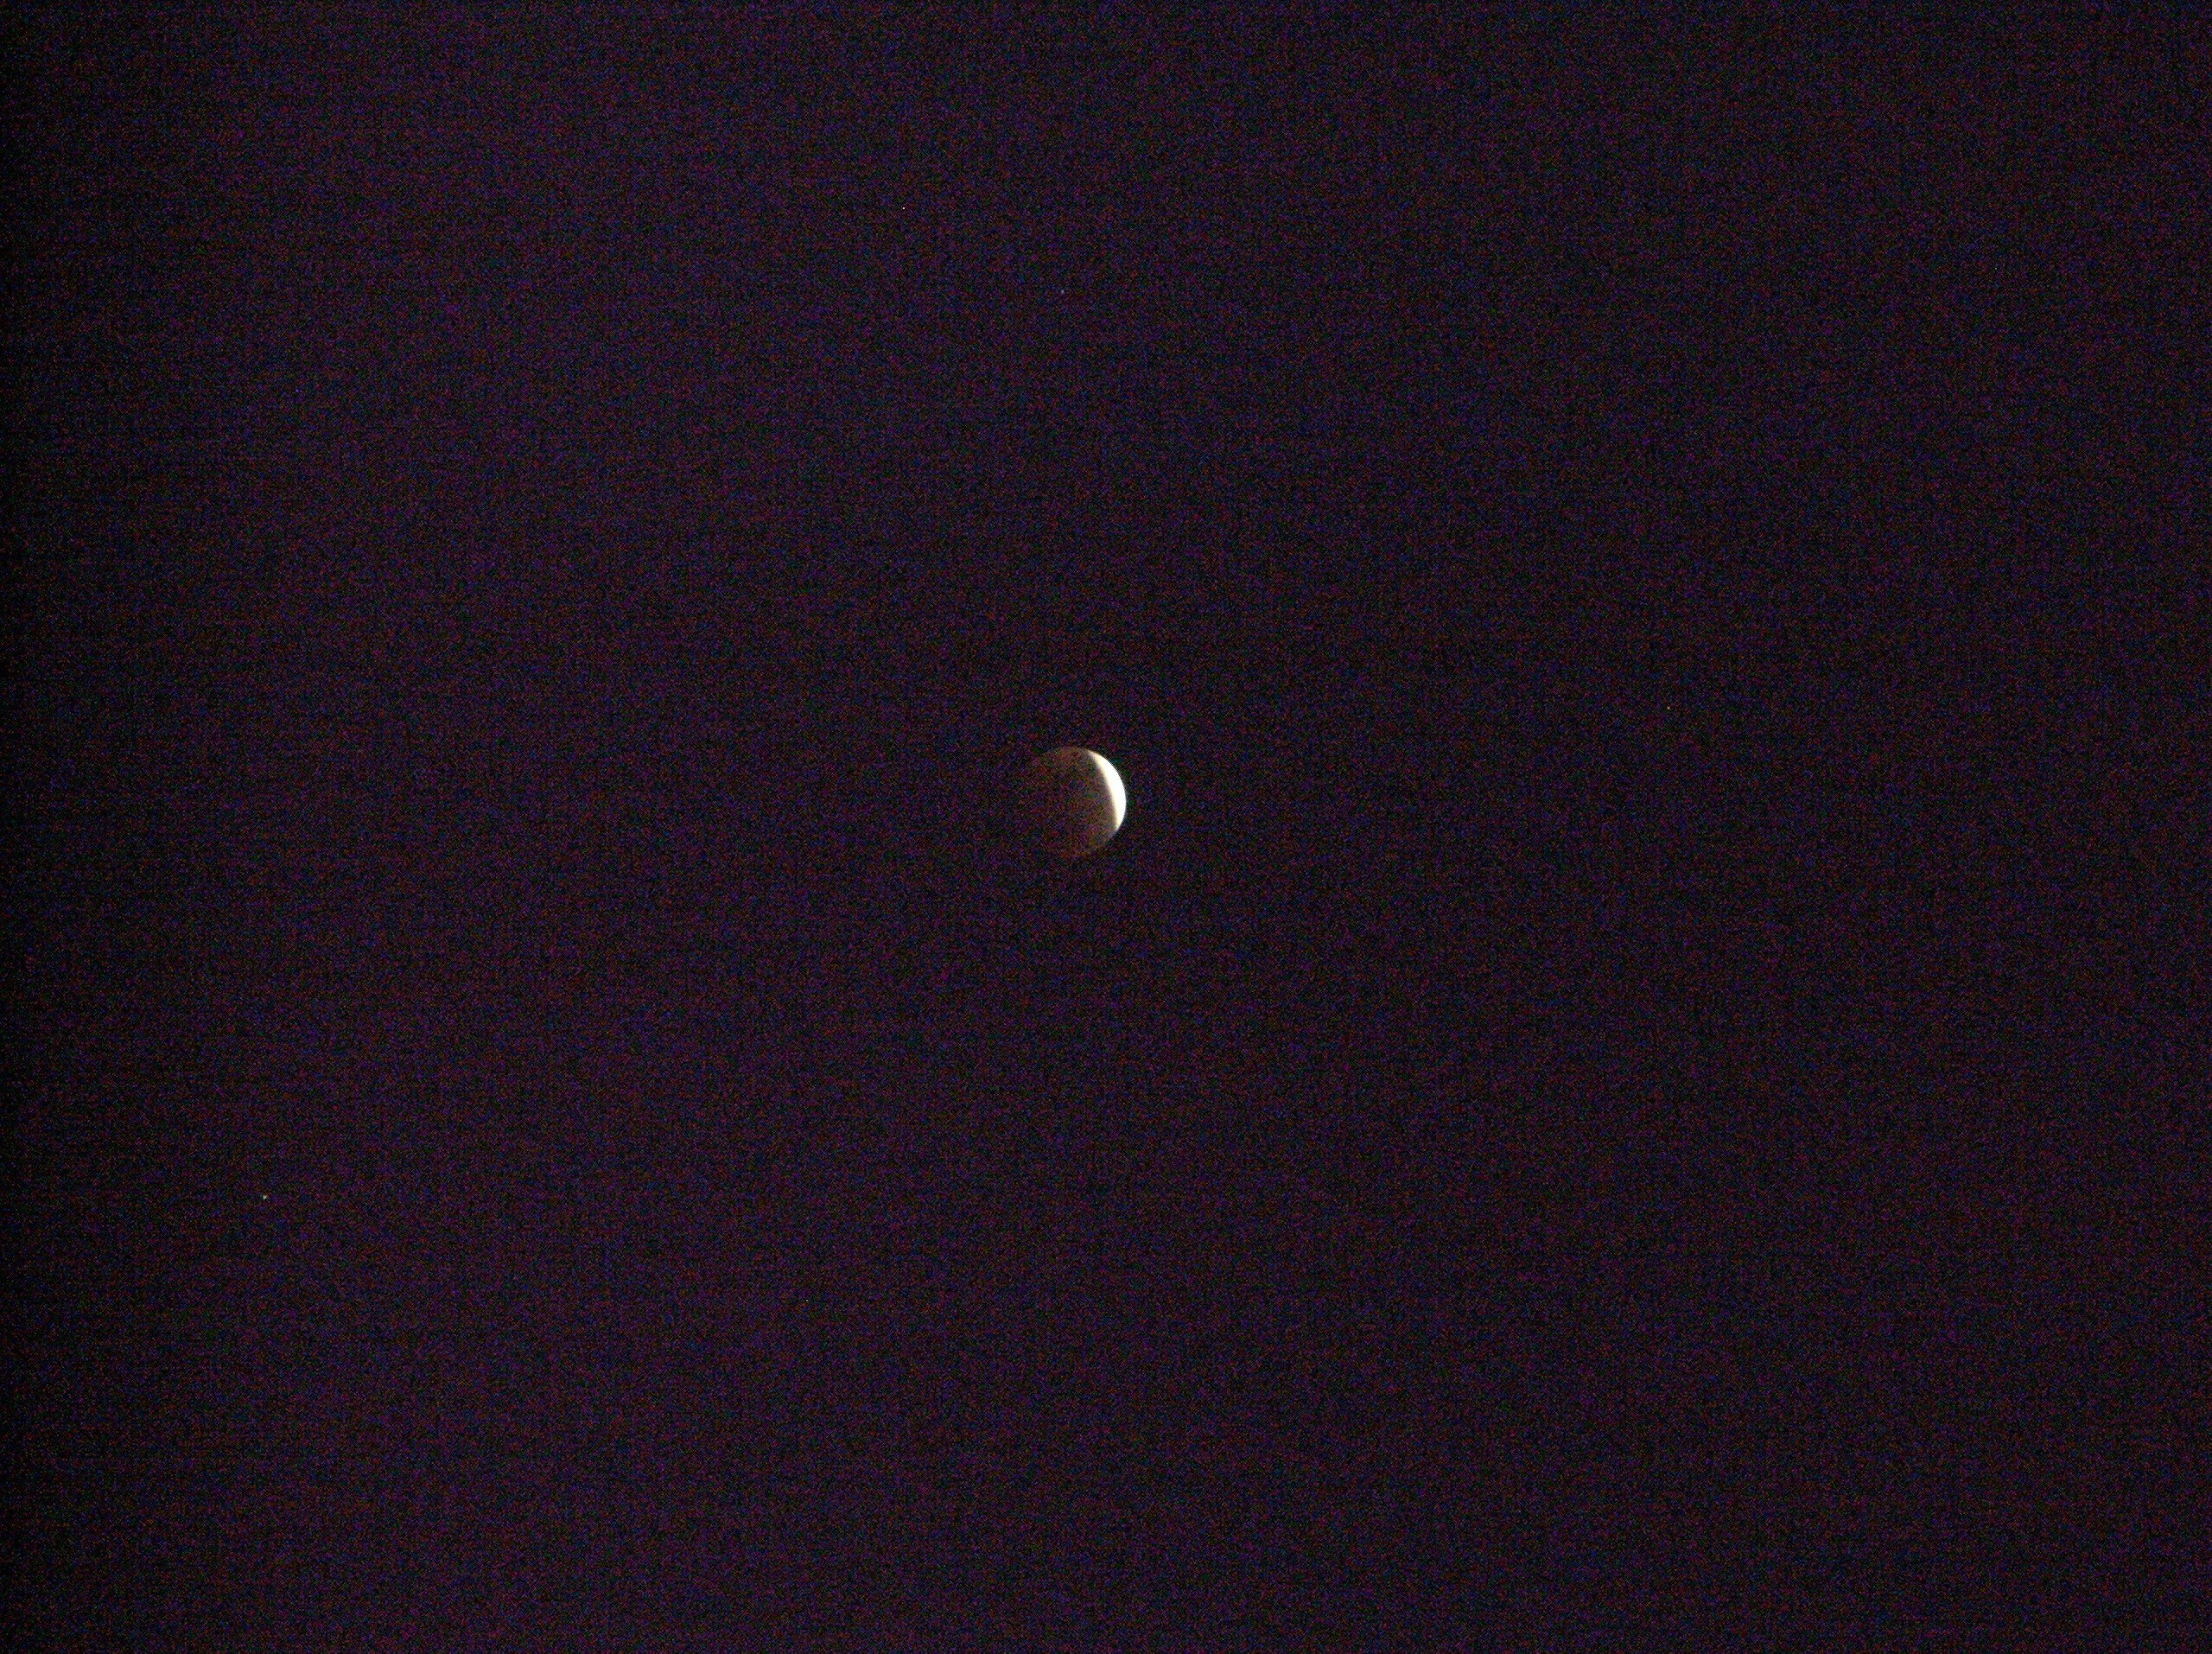 Lunar Eclipse 2008-02-20